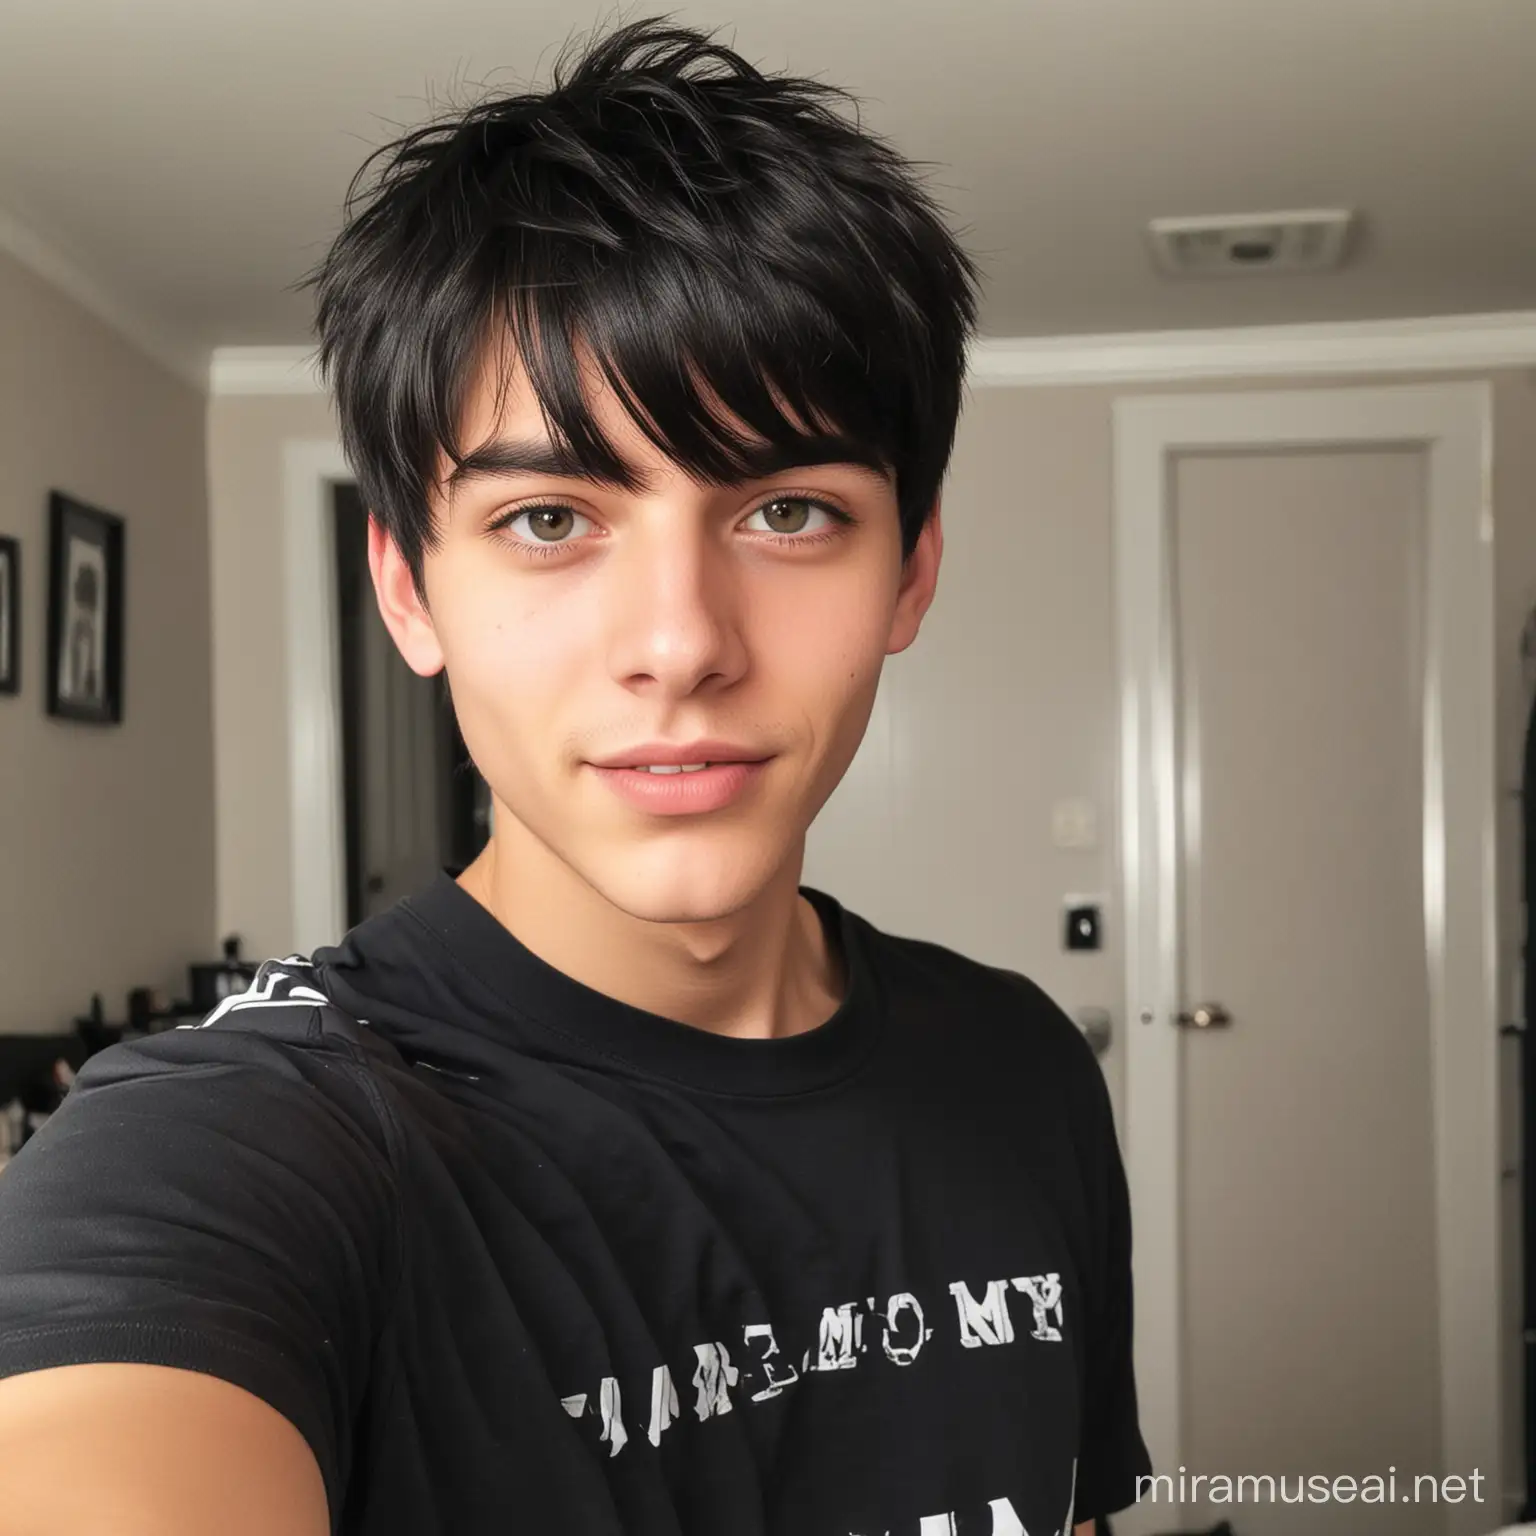 Chico de 17 años 
pelo negro con un cerquillo ojos de cazador   ,en su habitación  selfie
